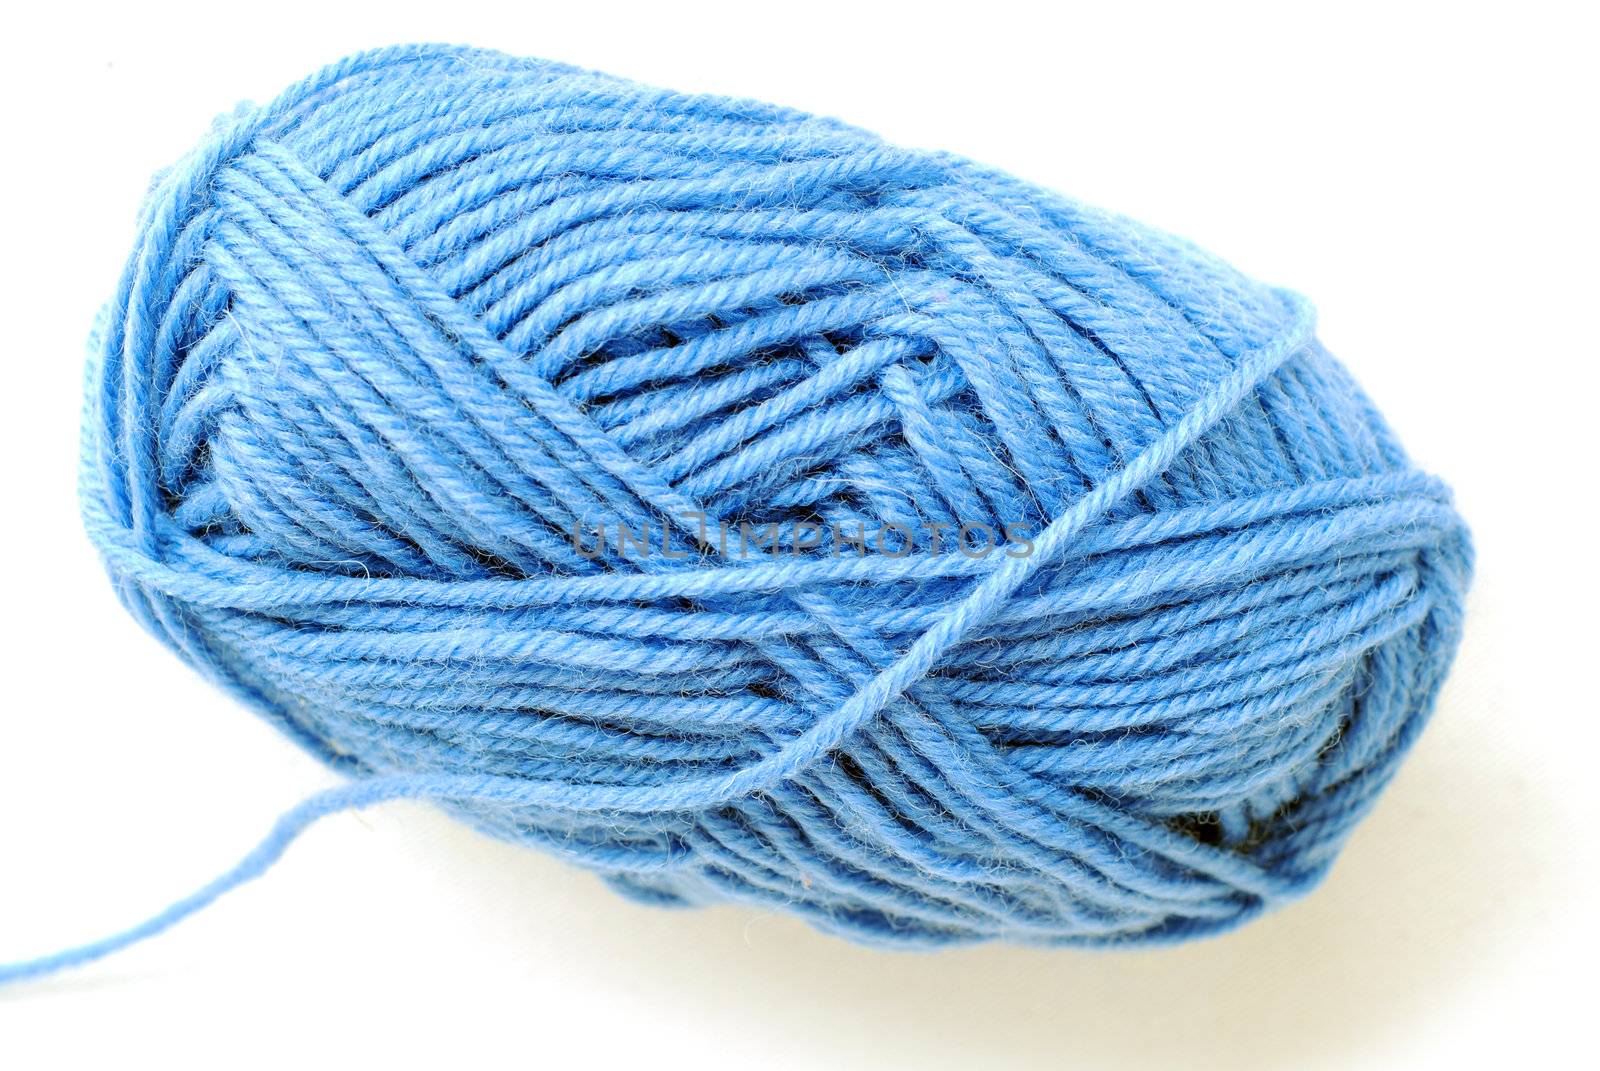 yarn by Gjermund